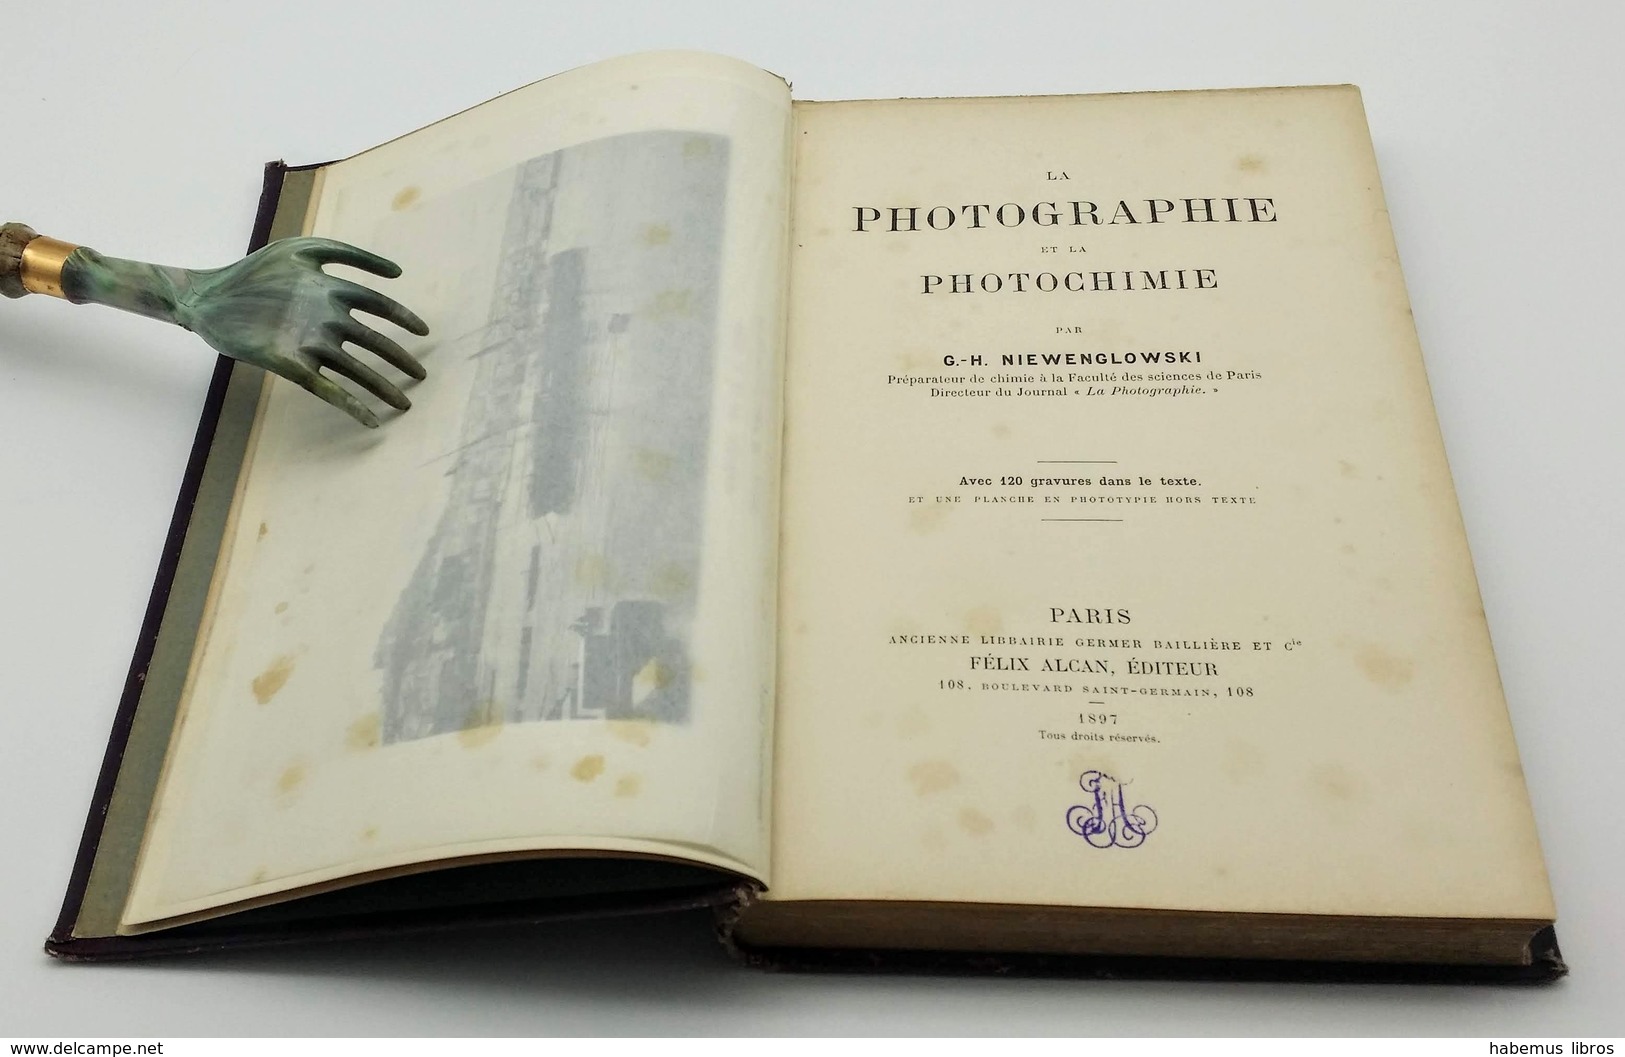 La Photographie Et La Photochimie / G.-H. Niewenglowski. - Paris : Felix Alcan, 1897 - Photographie